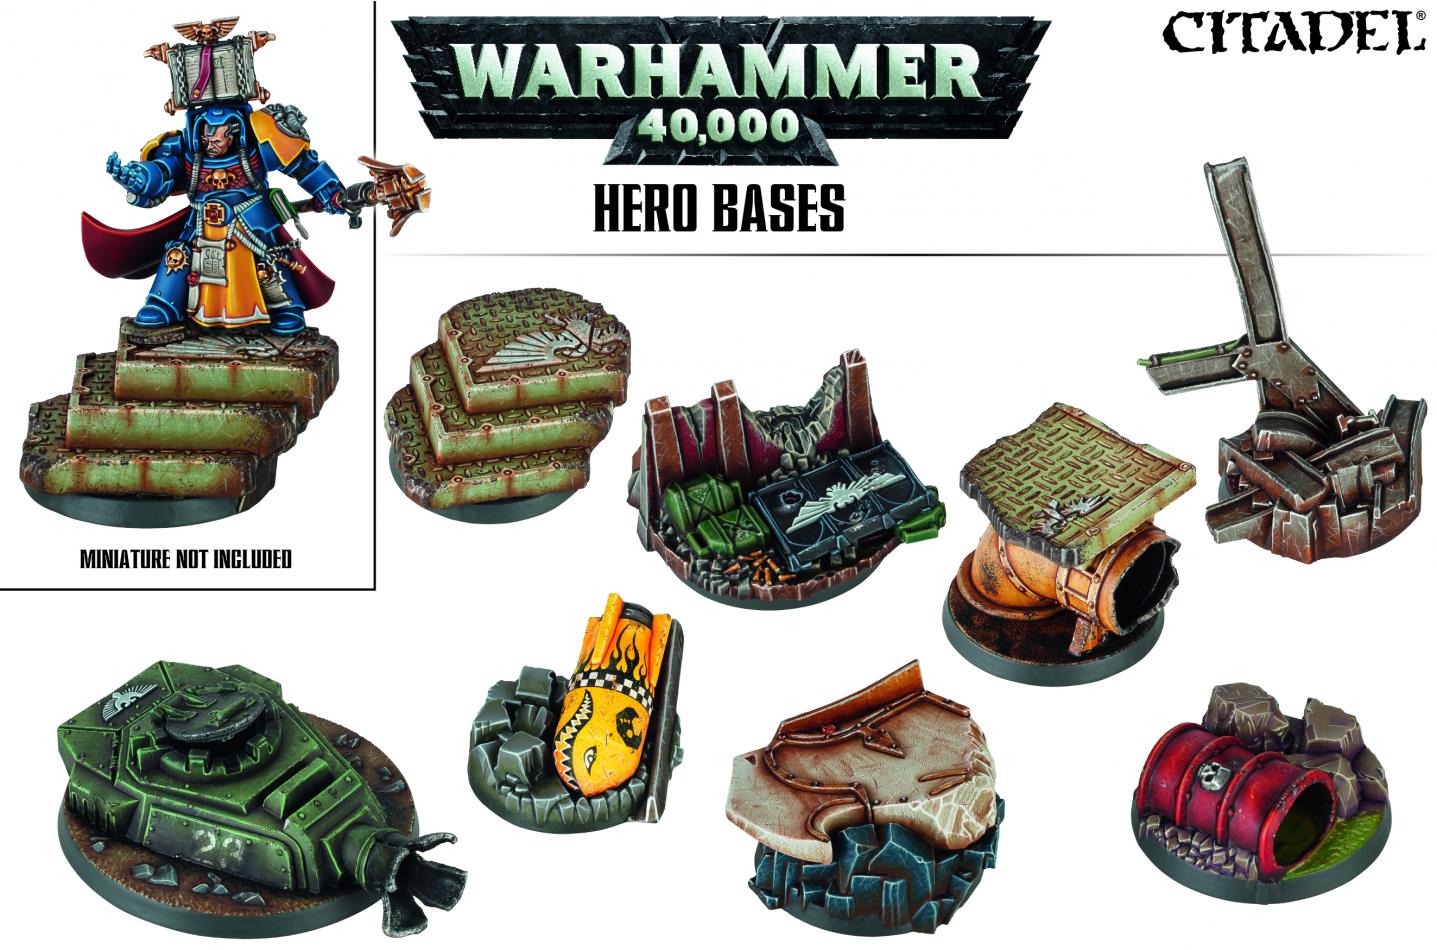 Warhammer 40,000 Hero Bases